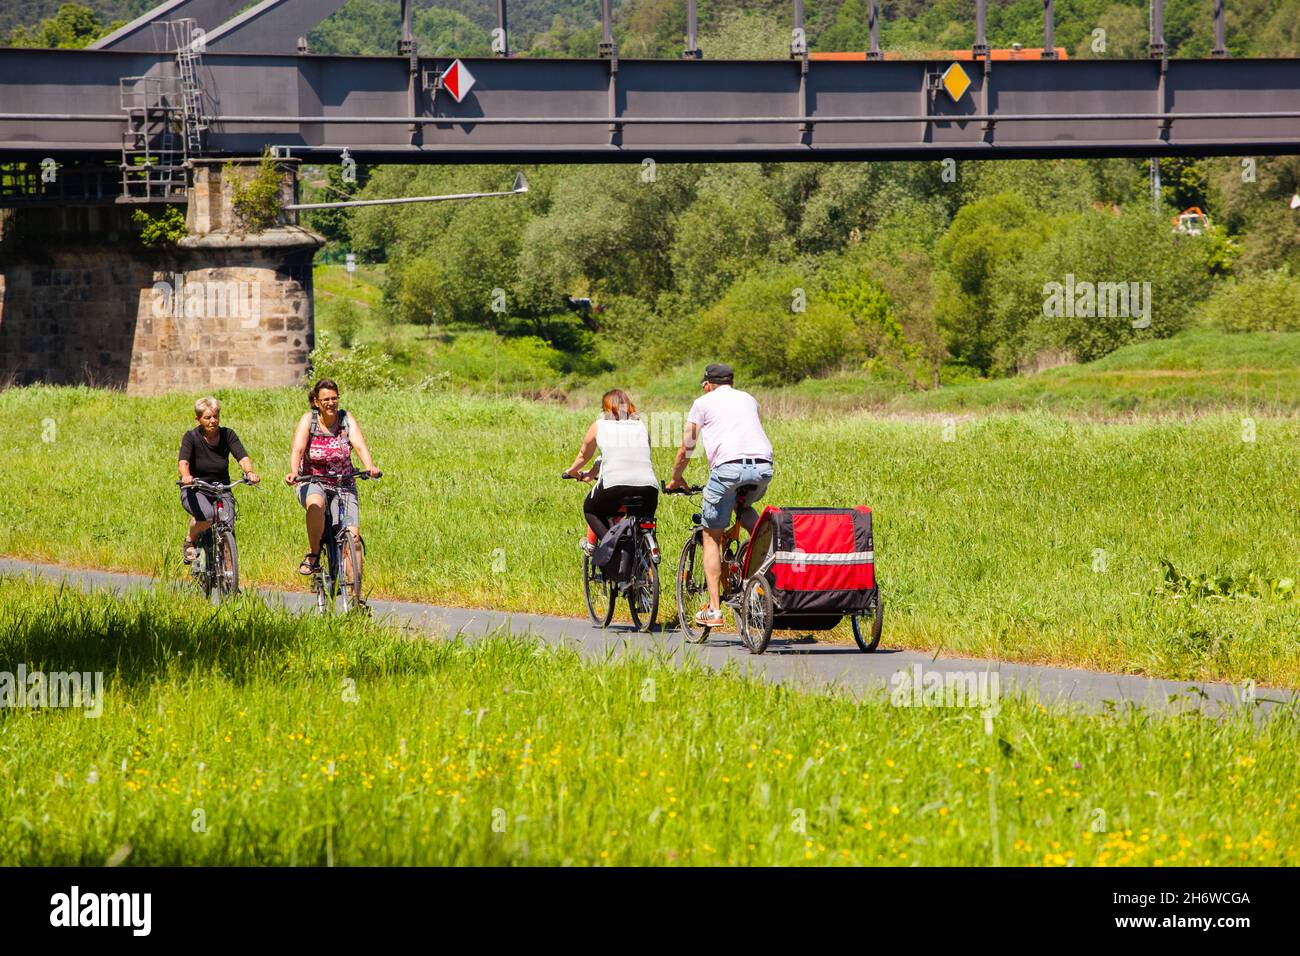 Les cyclistes se trouvent sur une piste cyclable le long de l'Elbe en Allemagne. Les gens sont sur une piste cyclable avec une remorque à vélo Banque D'Images